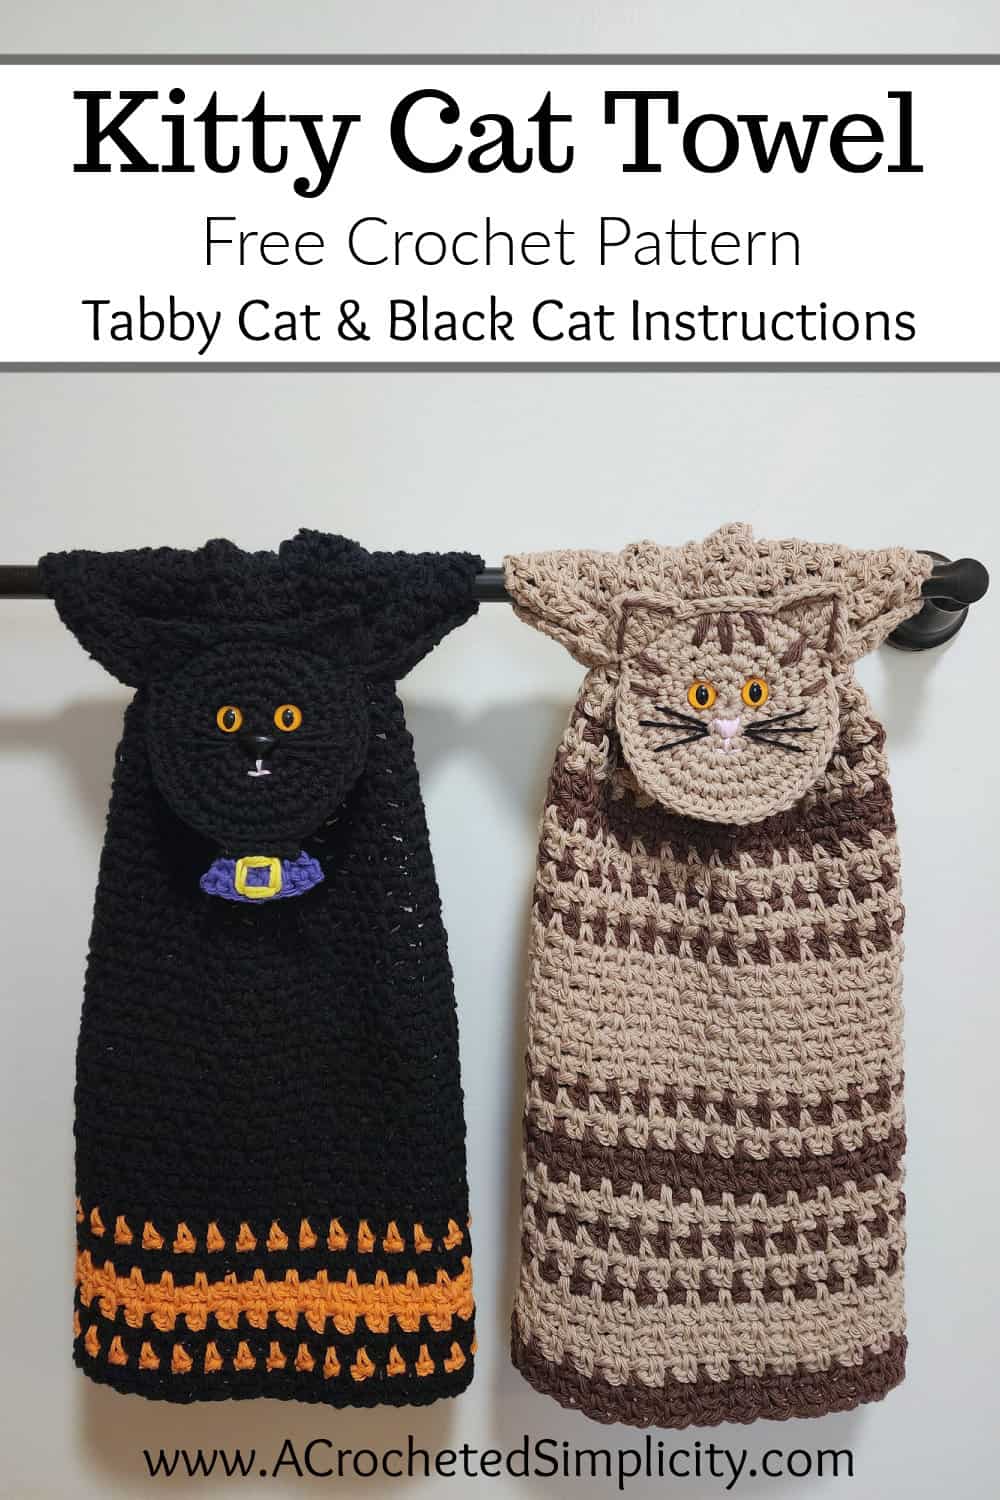 https://www.acrochetedsimplicity.com/wp-content/uploads/2022/09/Kitty-Cat-Towel-Pinterest-3.jpg